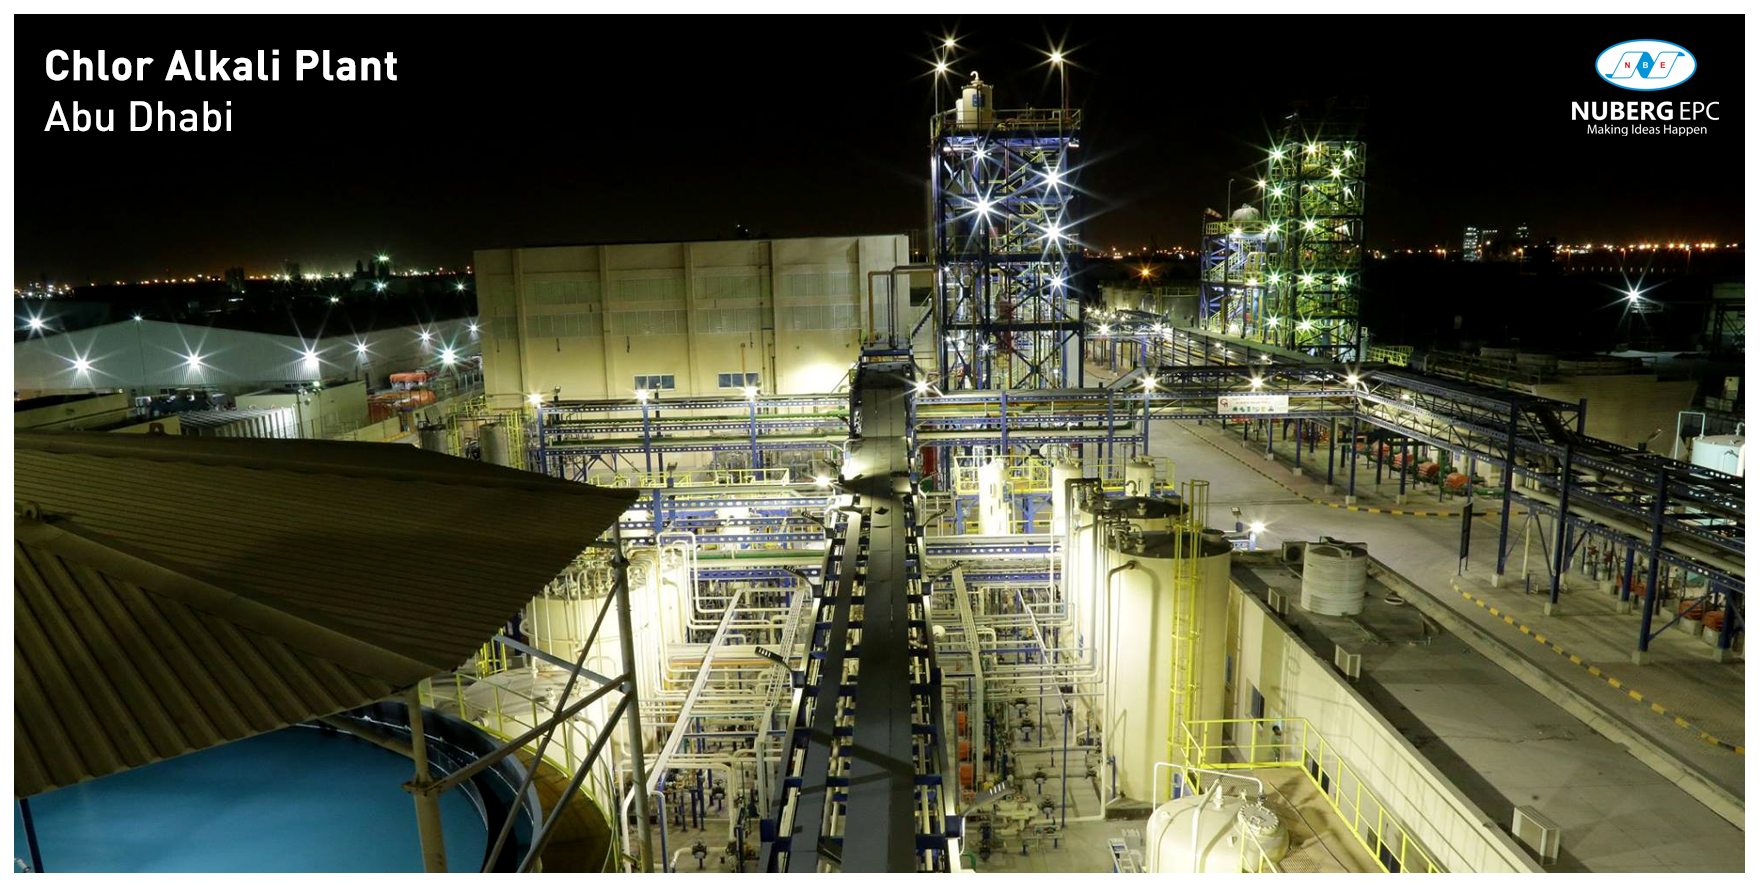 Chlor-Alkali Plant project, Abu Dhabi